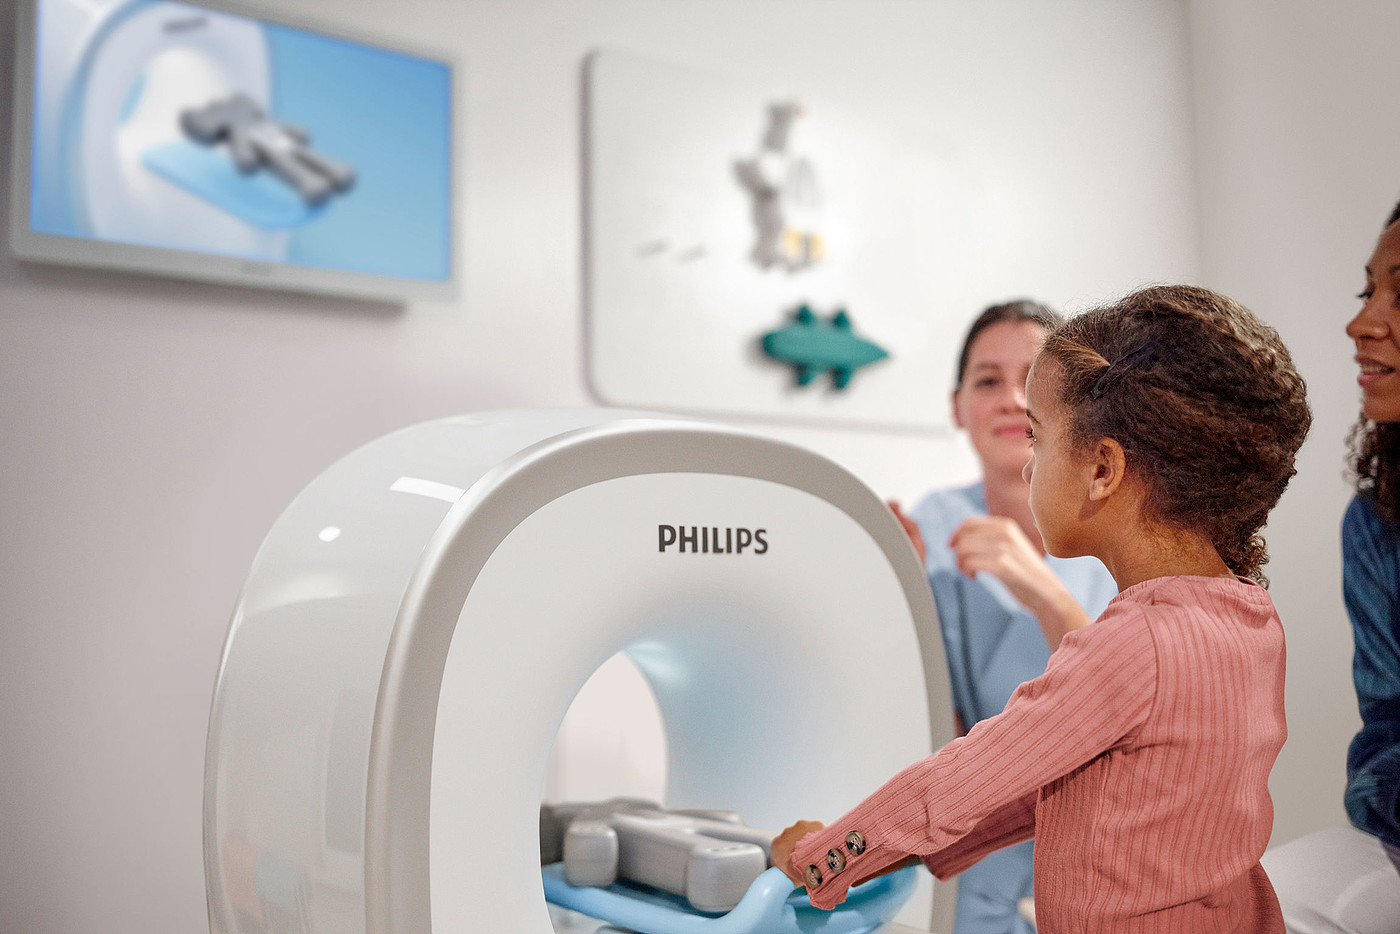 philips，磁共振儿科辅导解决方案，医疗器械，2022红点产品设计大奖，